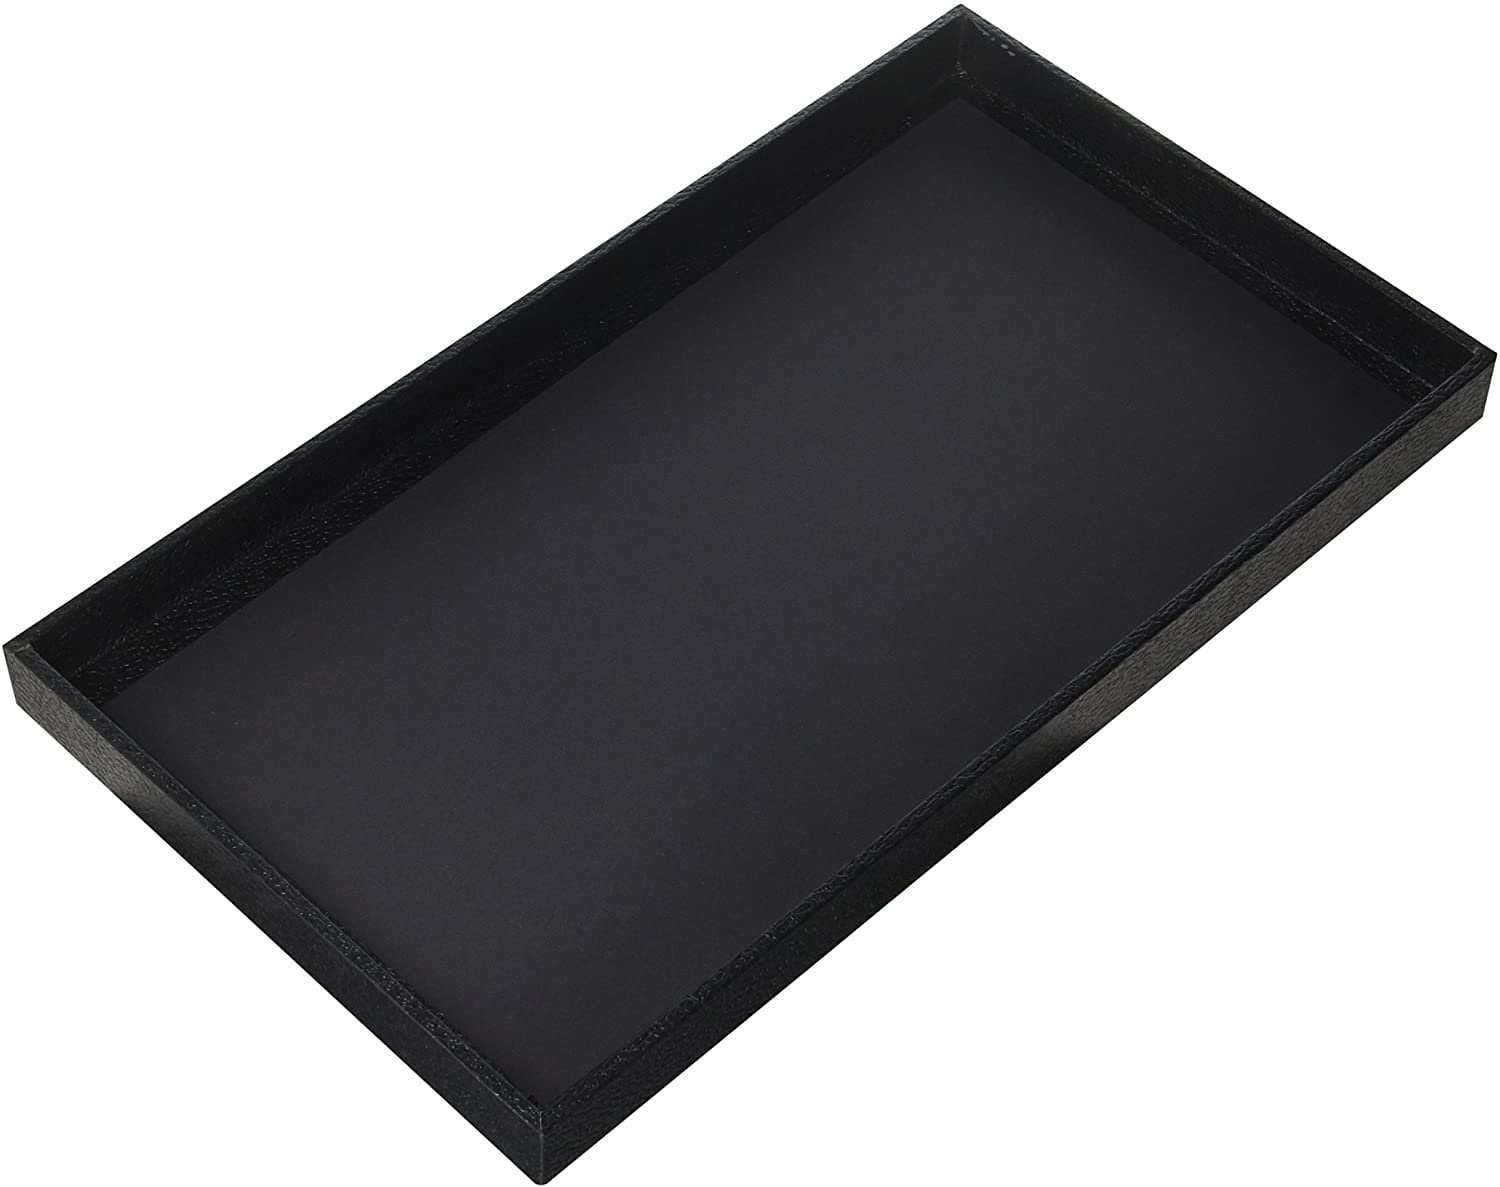 12 Black Plastic Stackable 14 3/4" x 8 1/4" x 2" Jewelry Display Trays Organizer 